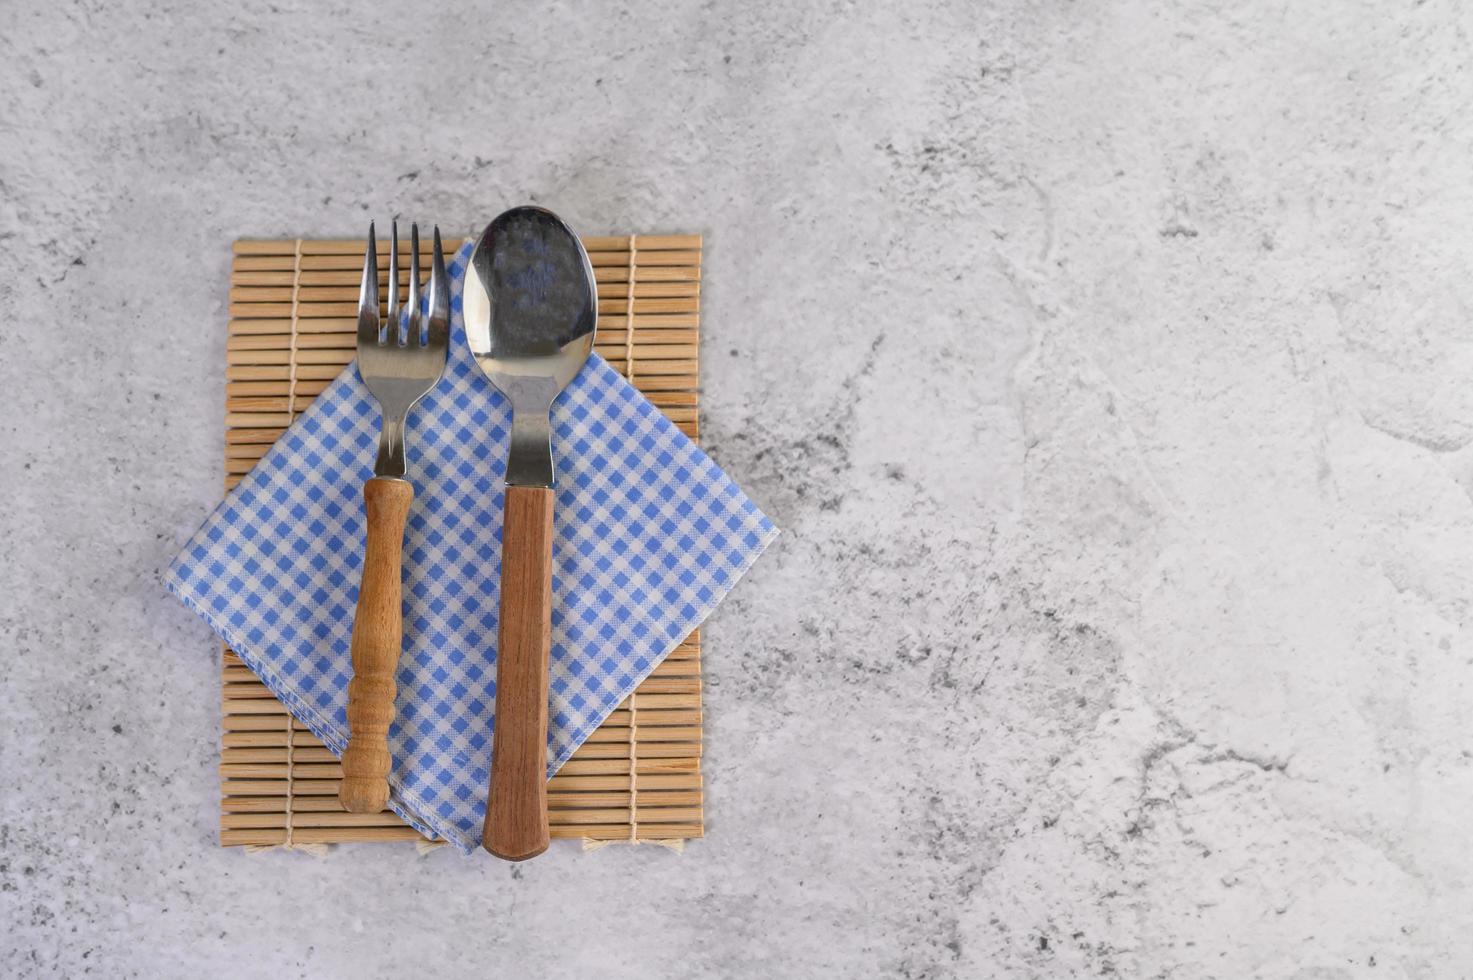 cuillère et fourchette sur des mouchoirs bleus et blancs photo